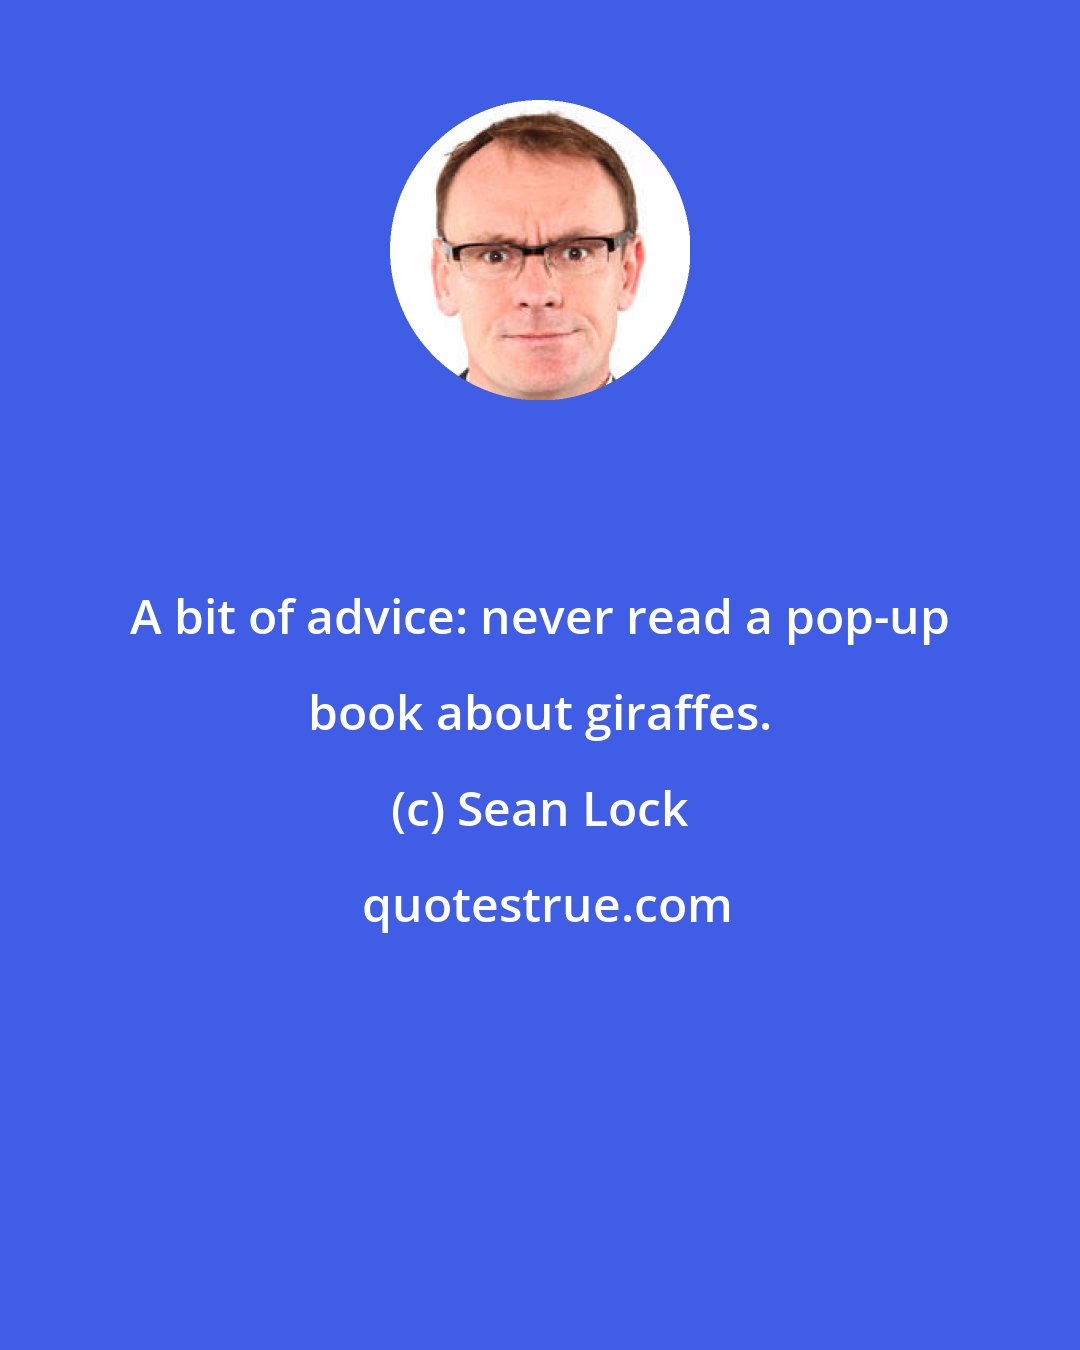 Sean Lock: A bit of advice: never read a pop-up book about giraffes.